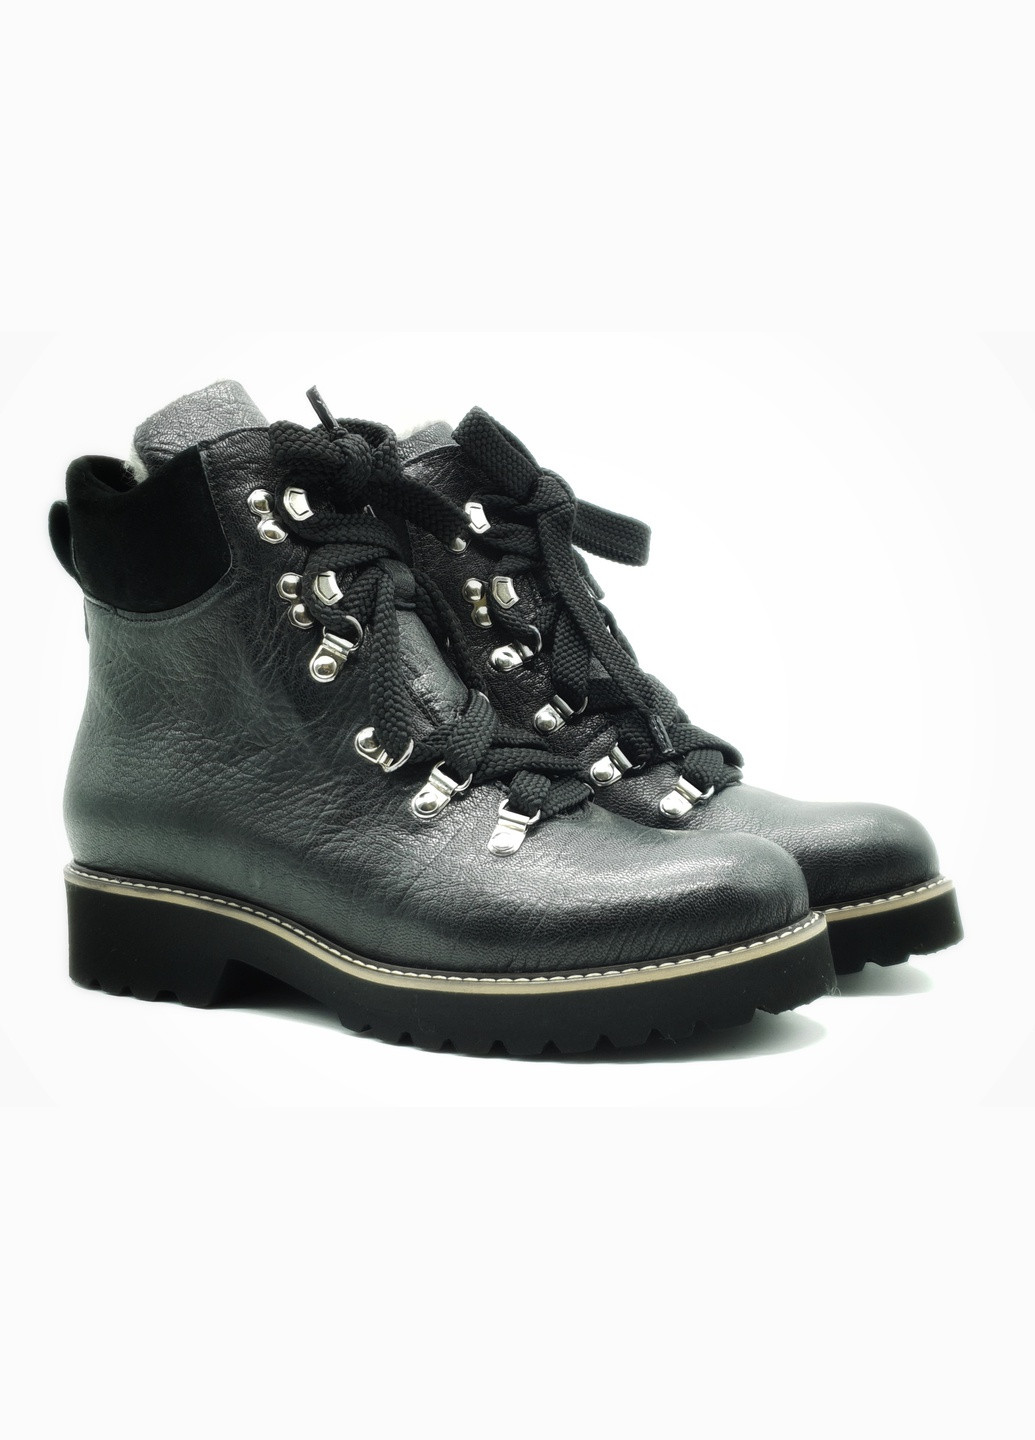 Осенние женские ботинки зимние черные кожаные p-10-1 25 см (р) patterns